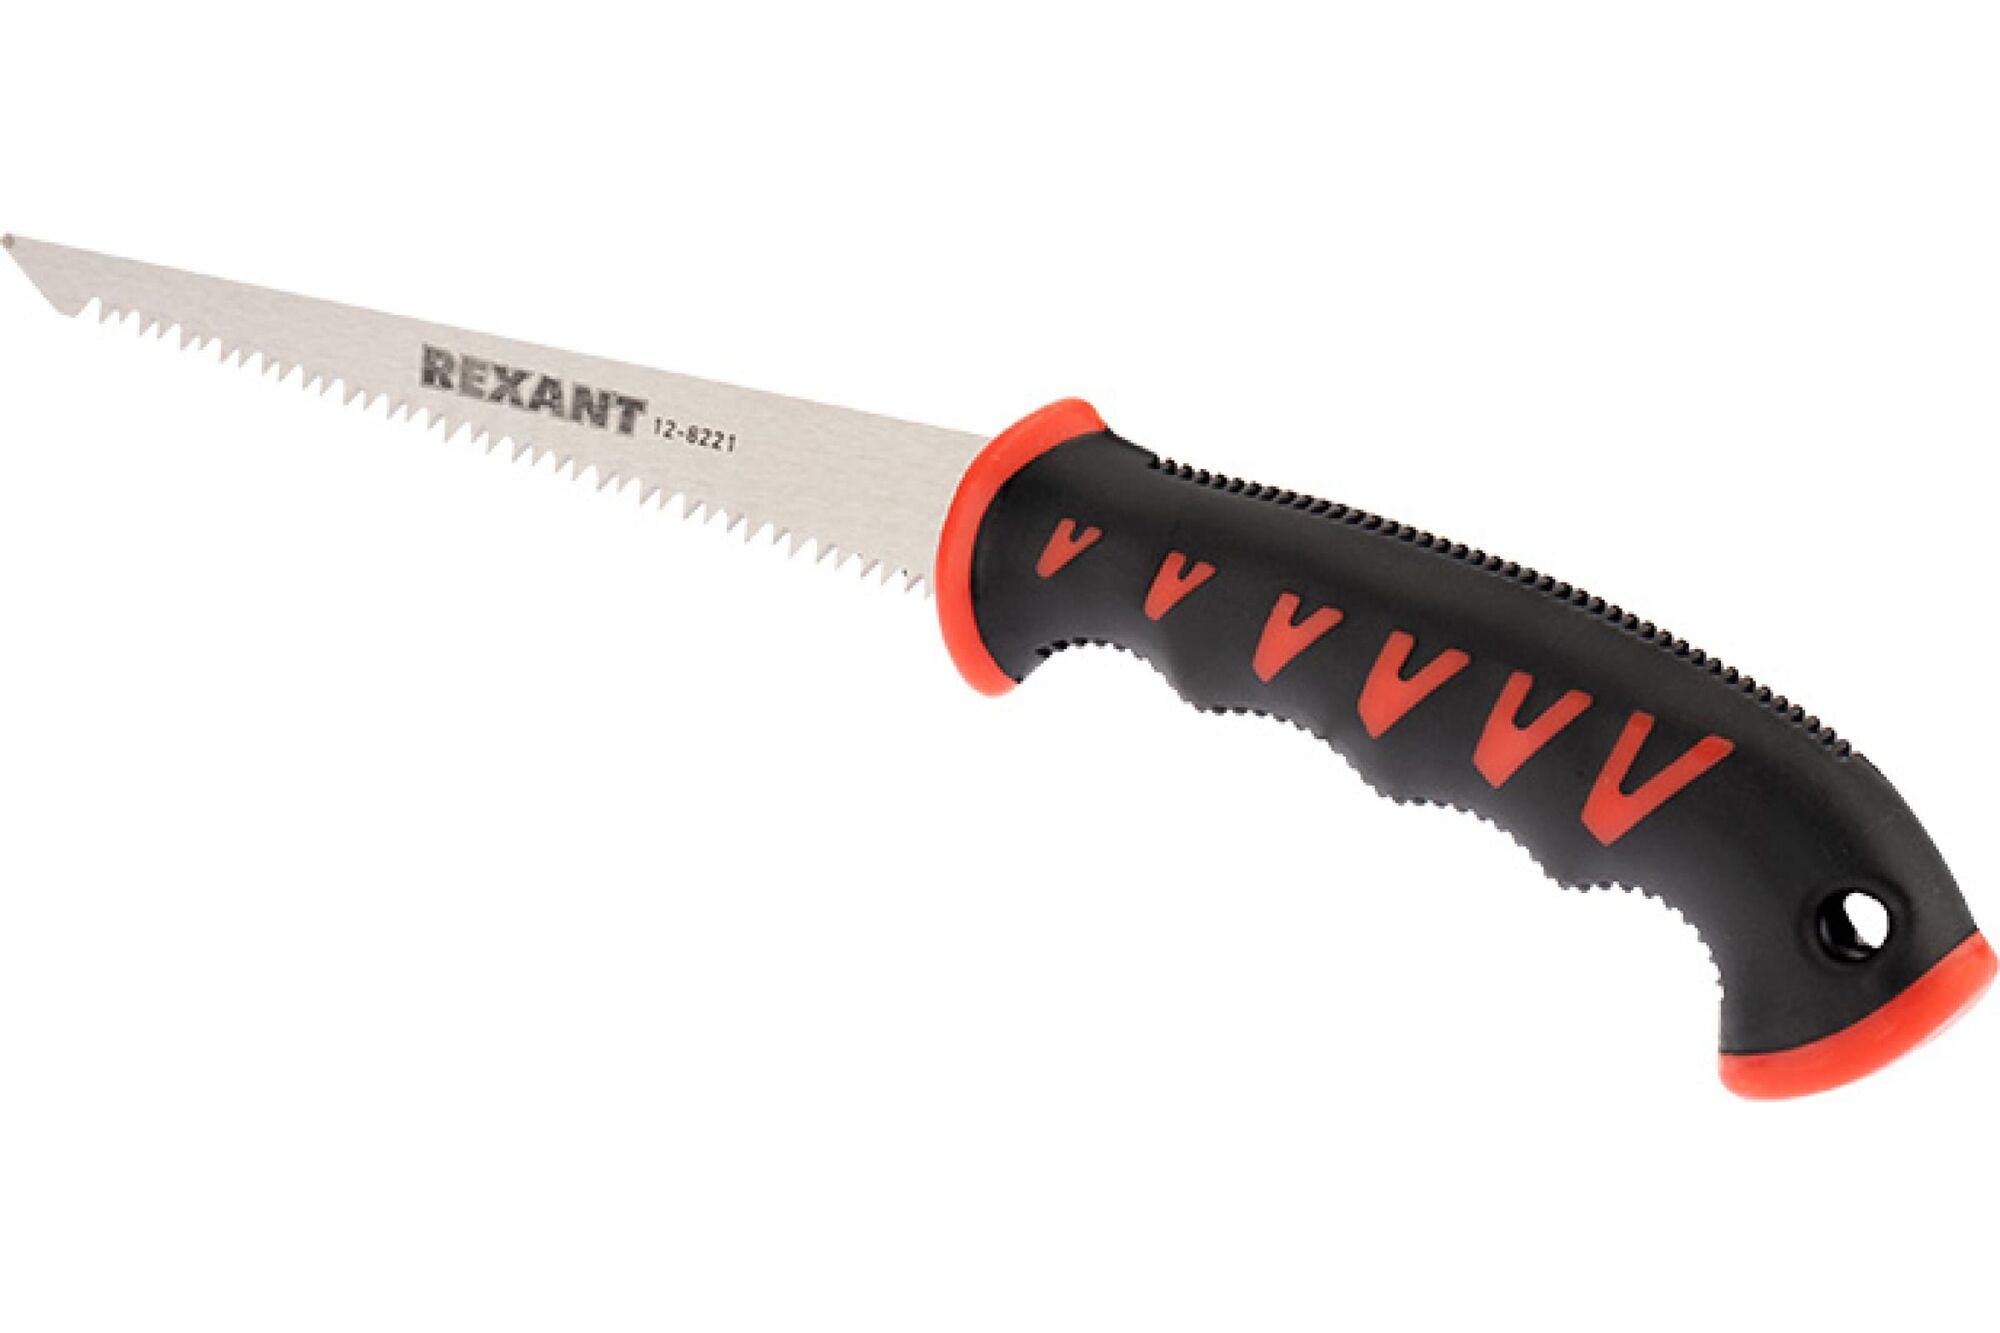 Ножовка по гипсокартону REXANT 180 мм, две рабочие кромки полотна 12-8221